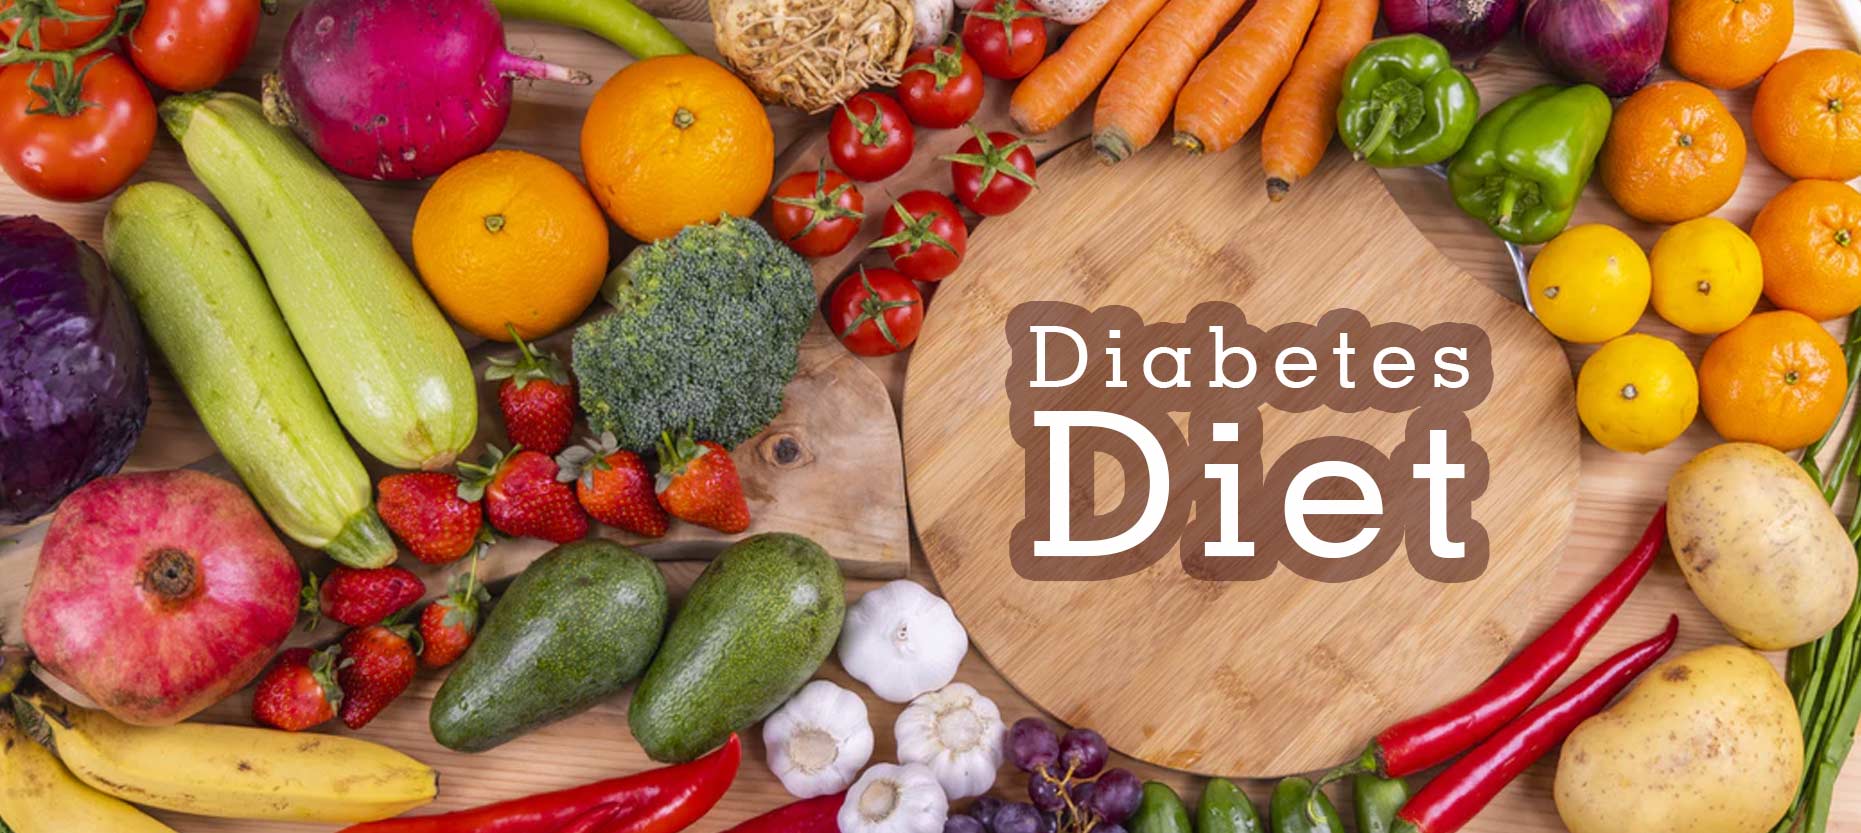 Diet Principles for Diabetics